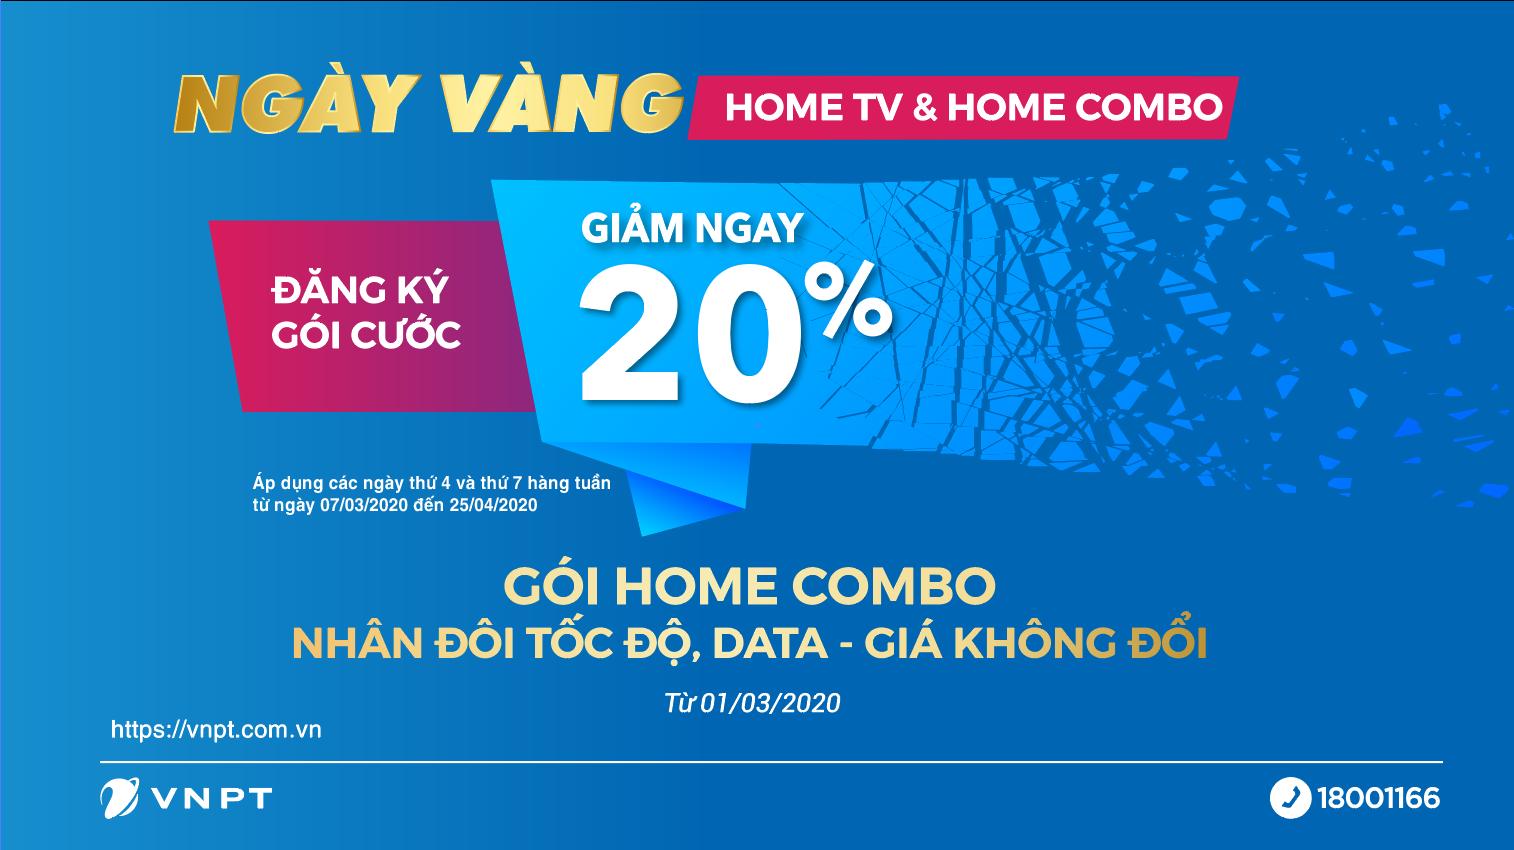 VNPT Bắc Giang triển khai chương trình Ngày vàng Home TV và Home Combo -GIẢM NGAY 20% KHI ĐĂNG KÝ HOME COMBO TRỌN GÓI INTERNET, DI ĐỘNG, TRUYỀN HÌNH